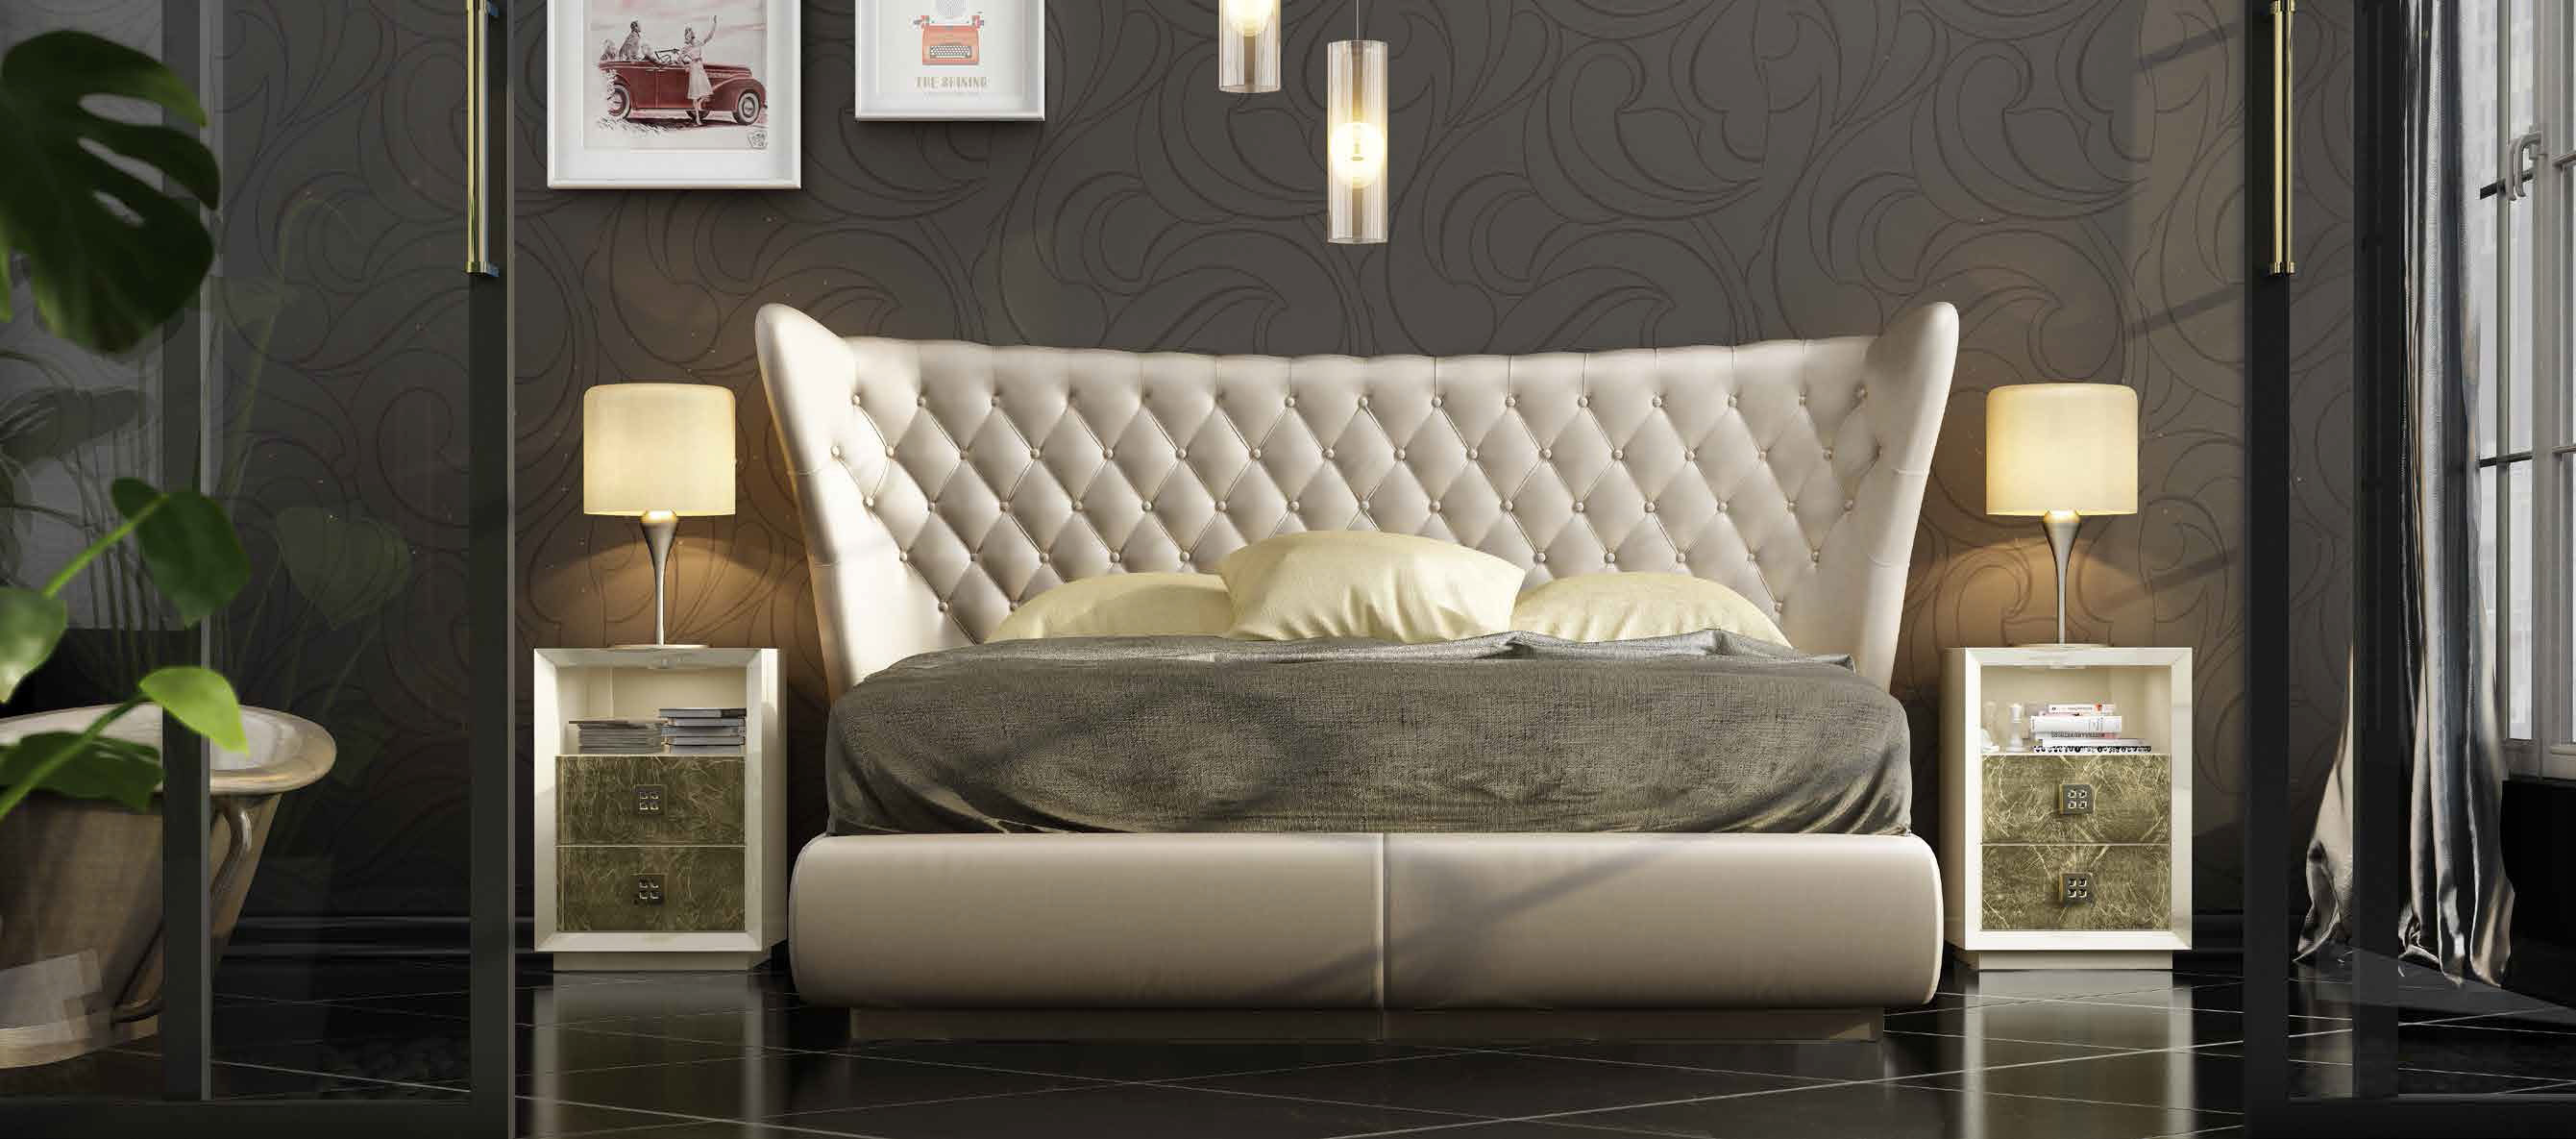 Brands Franco Furniture Avanty Bedrooms, Spain DOR 48